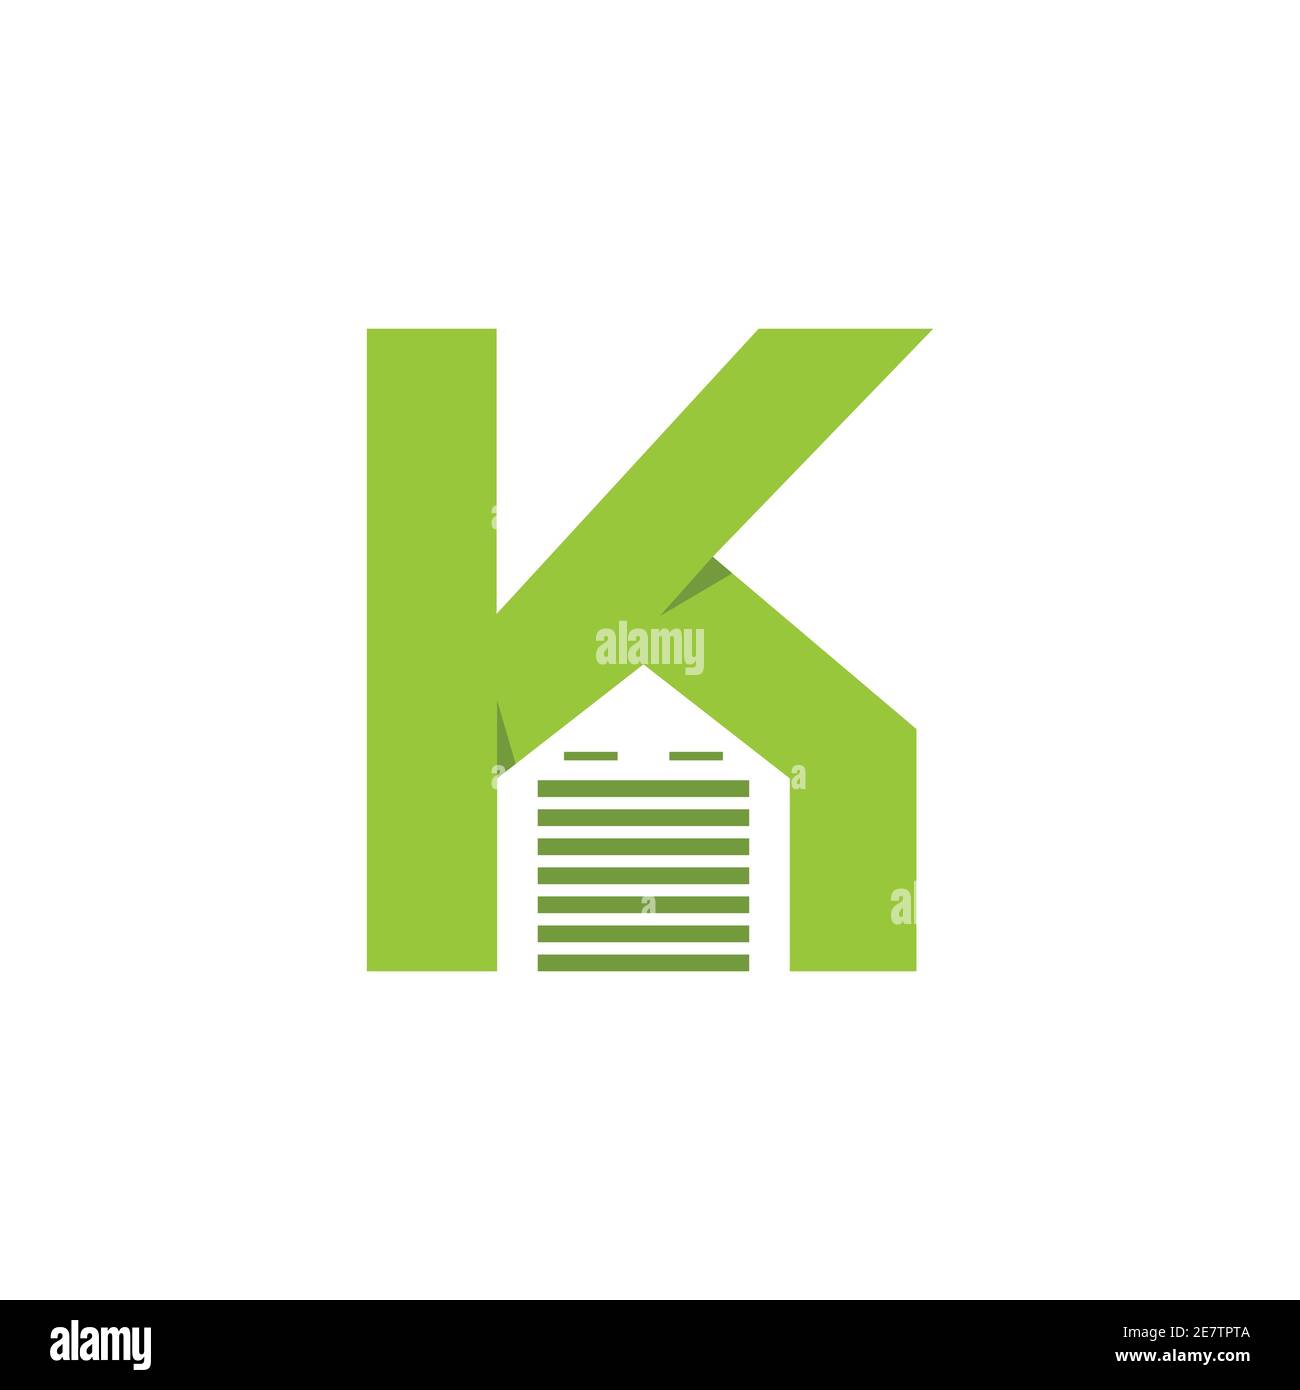 Buchstabe K Garagentor Logo Vektor-Design. Buchstaben Marke Schriftzug Logo der Garagentor Unternehmen mit dem Buchstaben K Stock Vektor